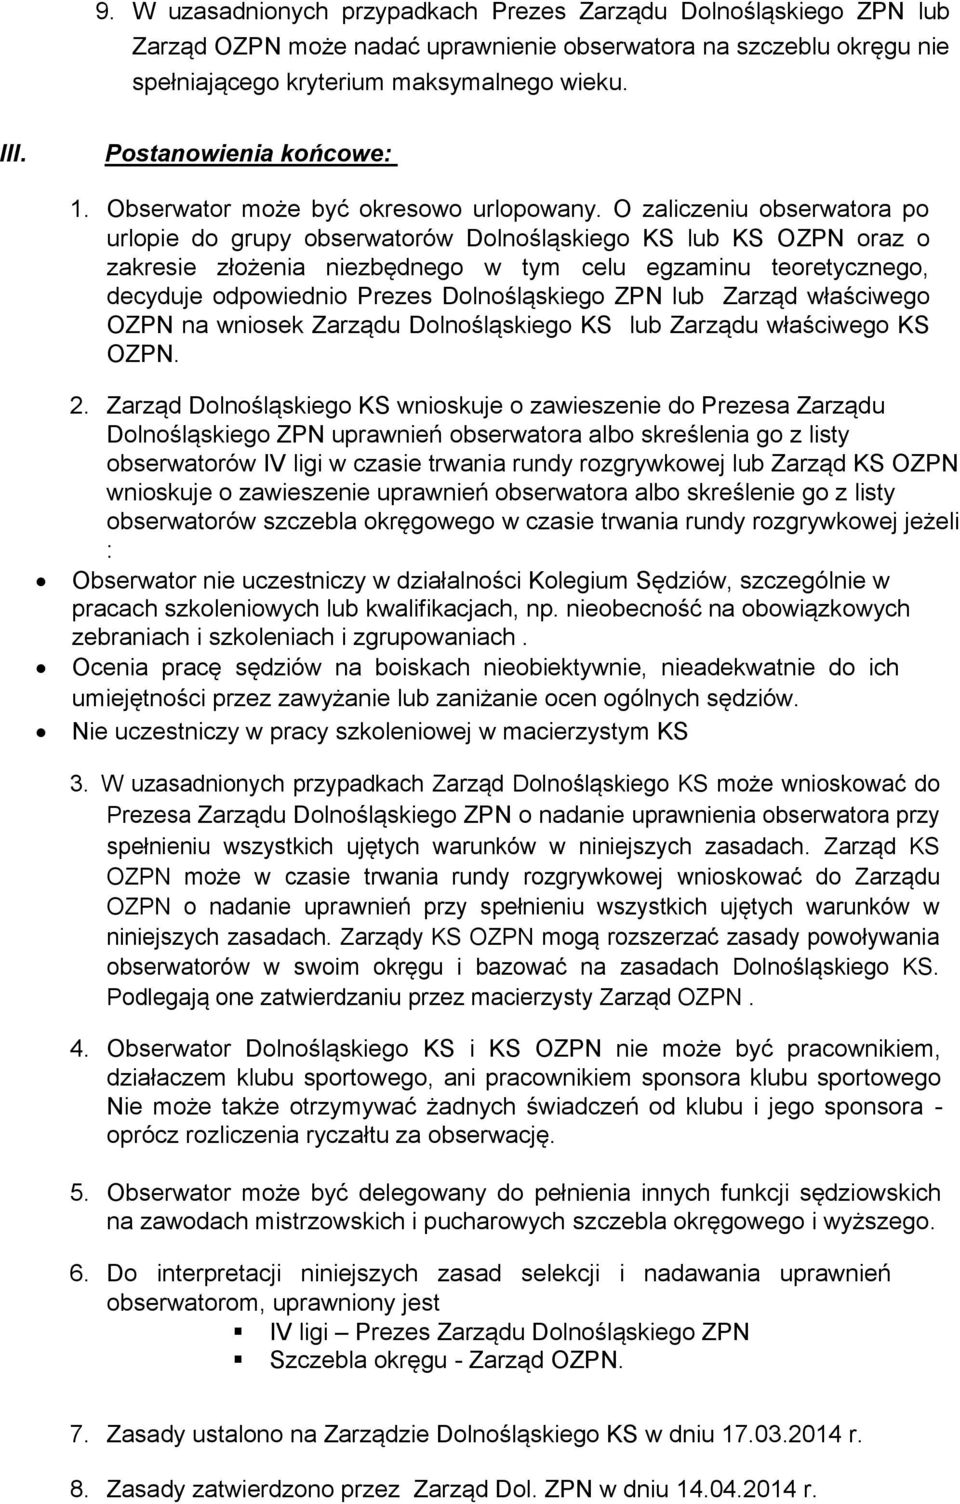 O zaliczeniu obserwatora po urlopie do grupy obserwatorów Dolnośląskiego KS lub KS OZPN oraz o zakresie złożenia niezbędnego w tym celu egzaminu teoretycznego, decyduje odpowiednio Prezes